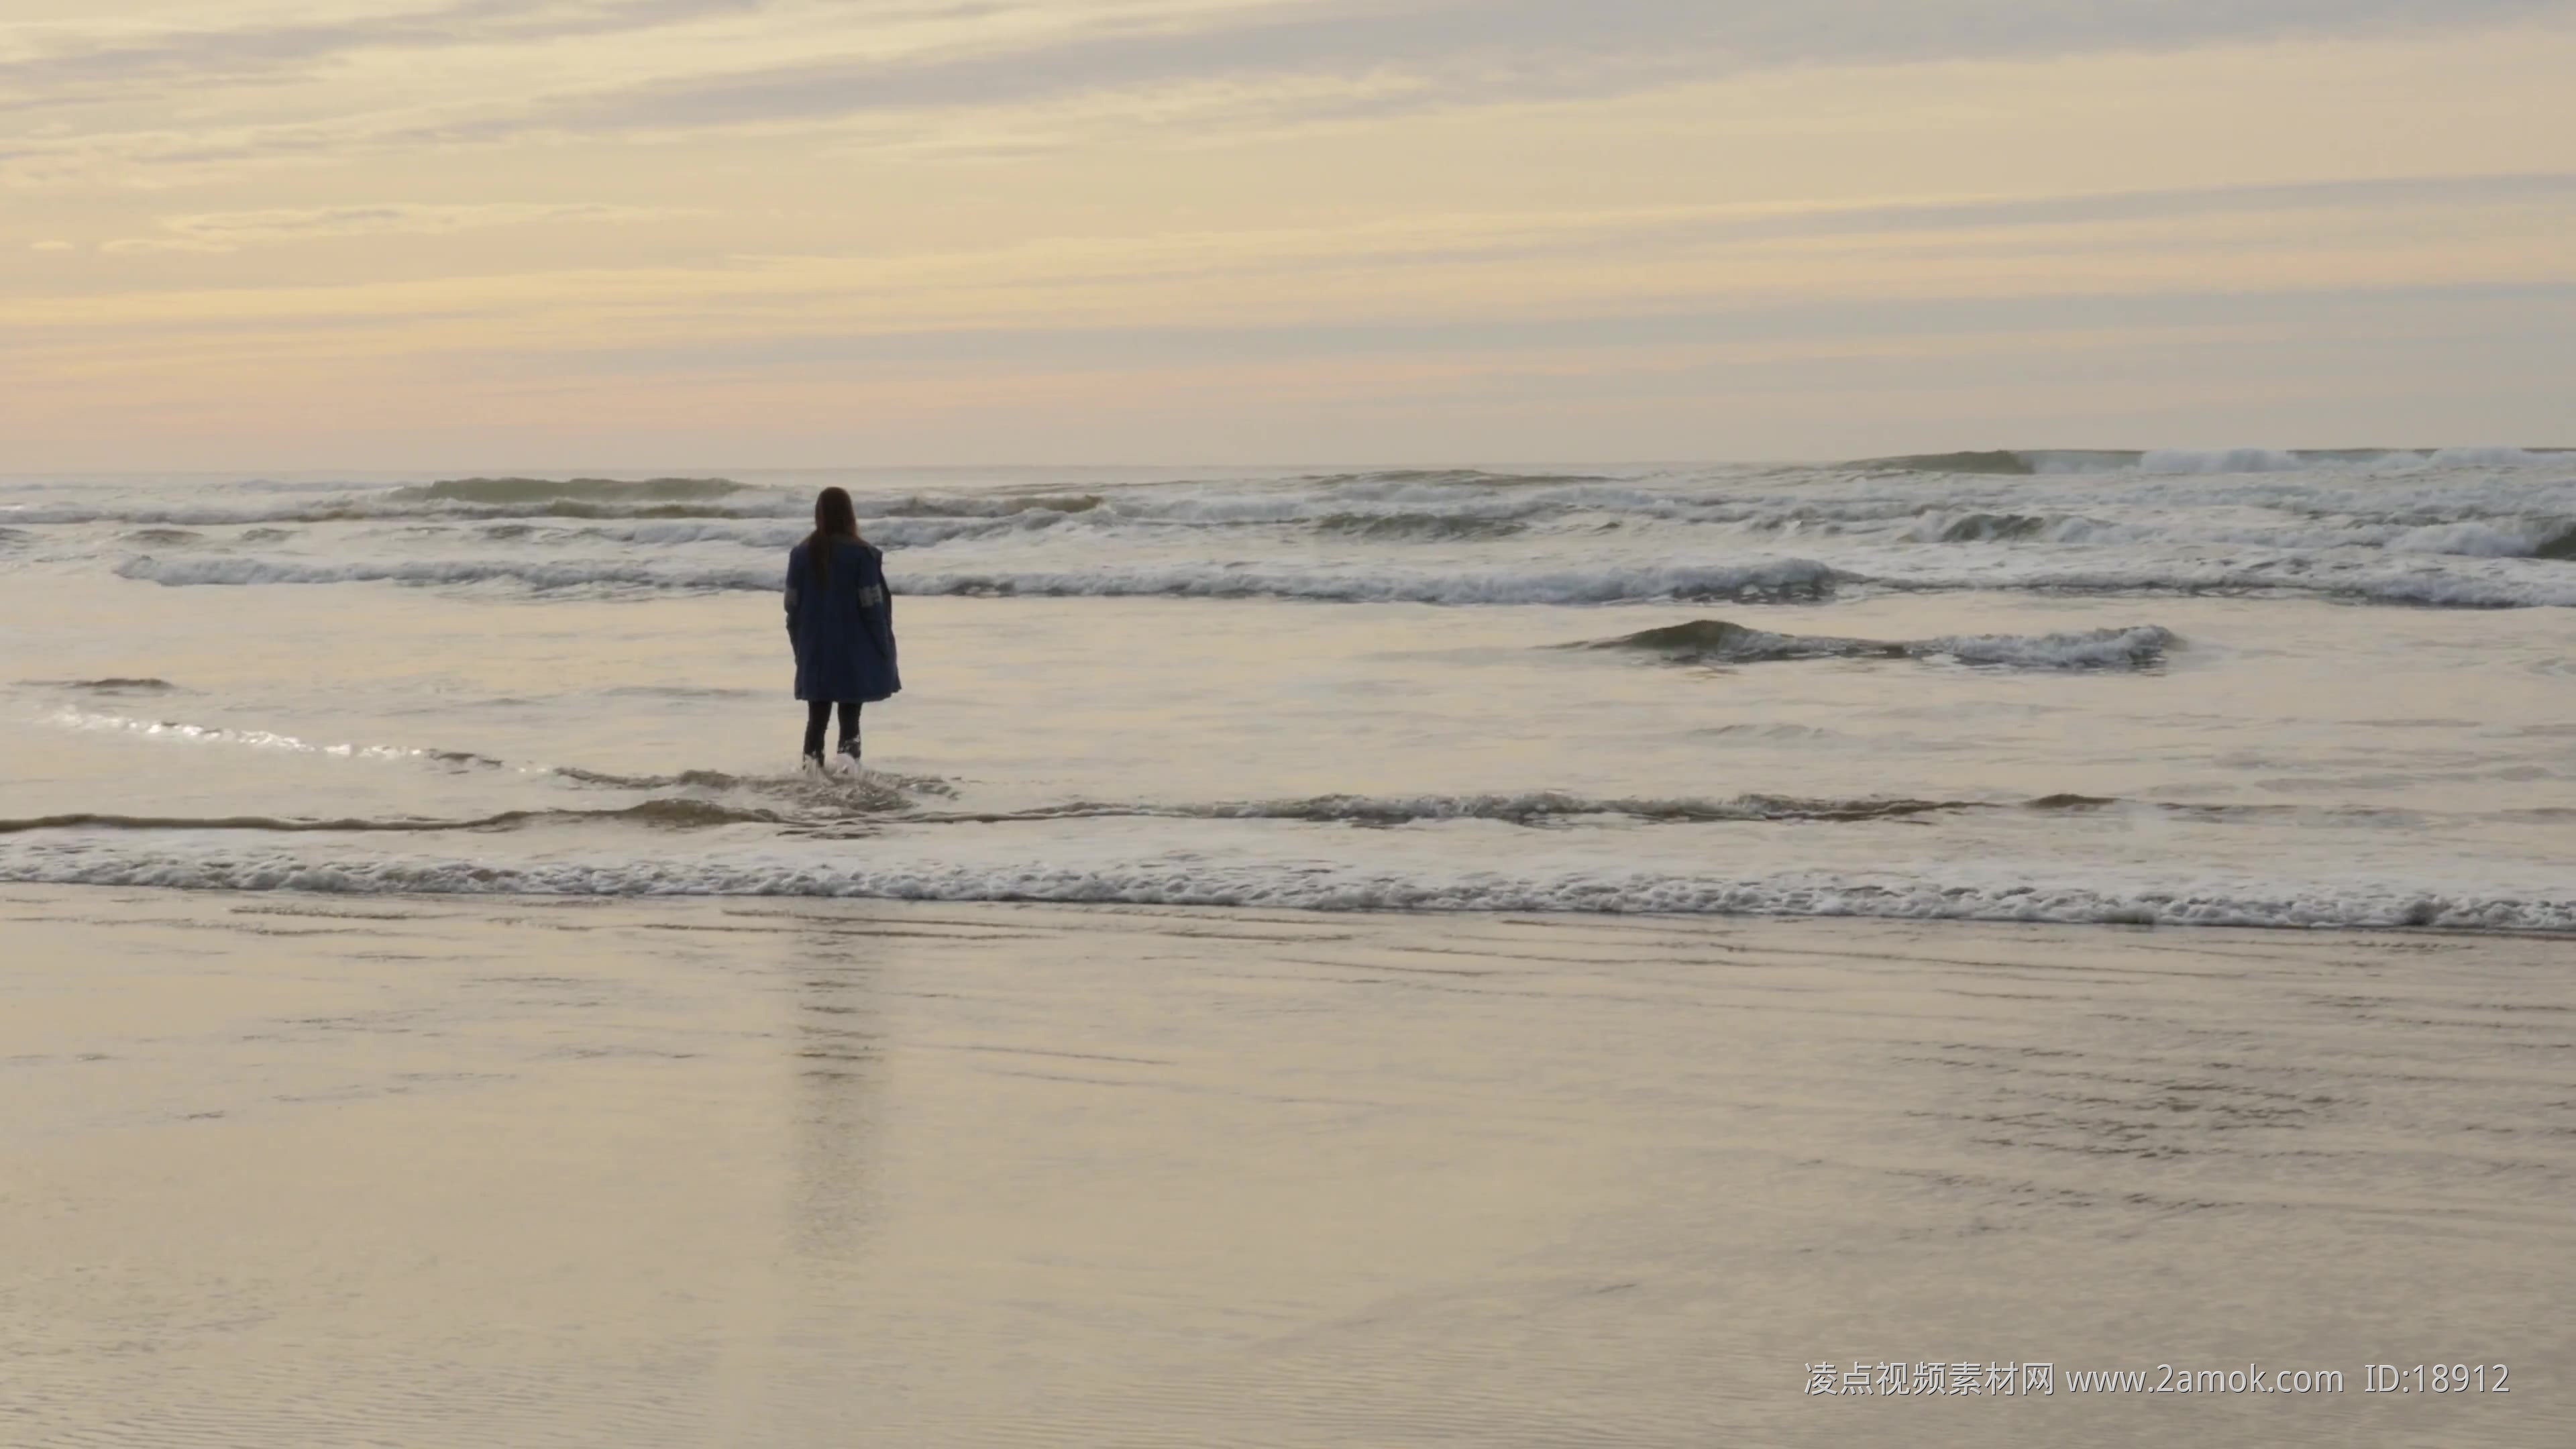 一个人悲伤坐在海边的图片 - 站长素材